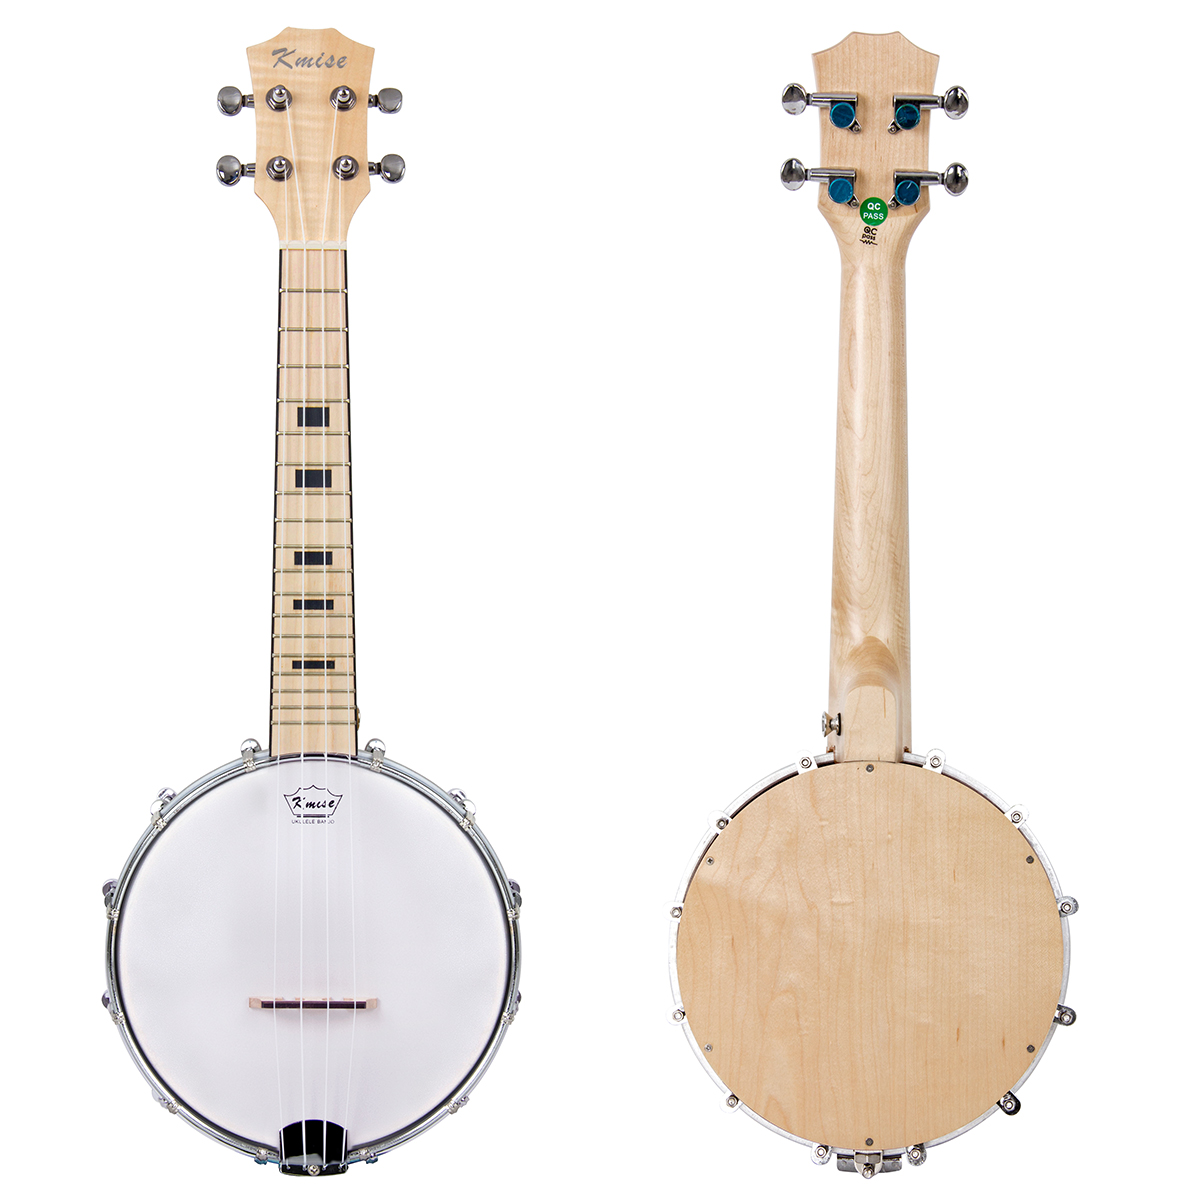 Banjo Ukulele,Kmise 4 String Ukulele Banjolele Concert Size 23 Inch Sapele Wood Banjo lele for Beginners 